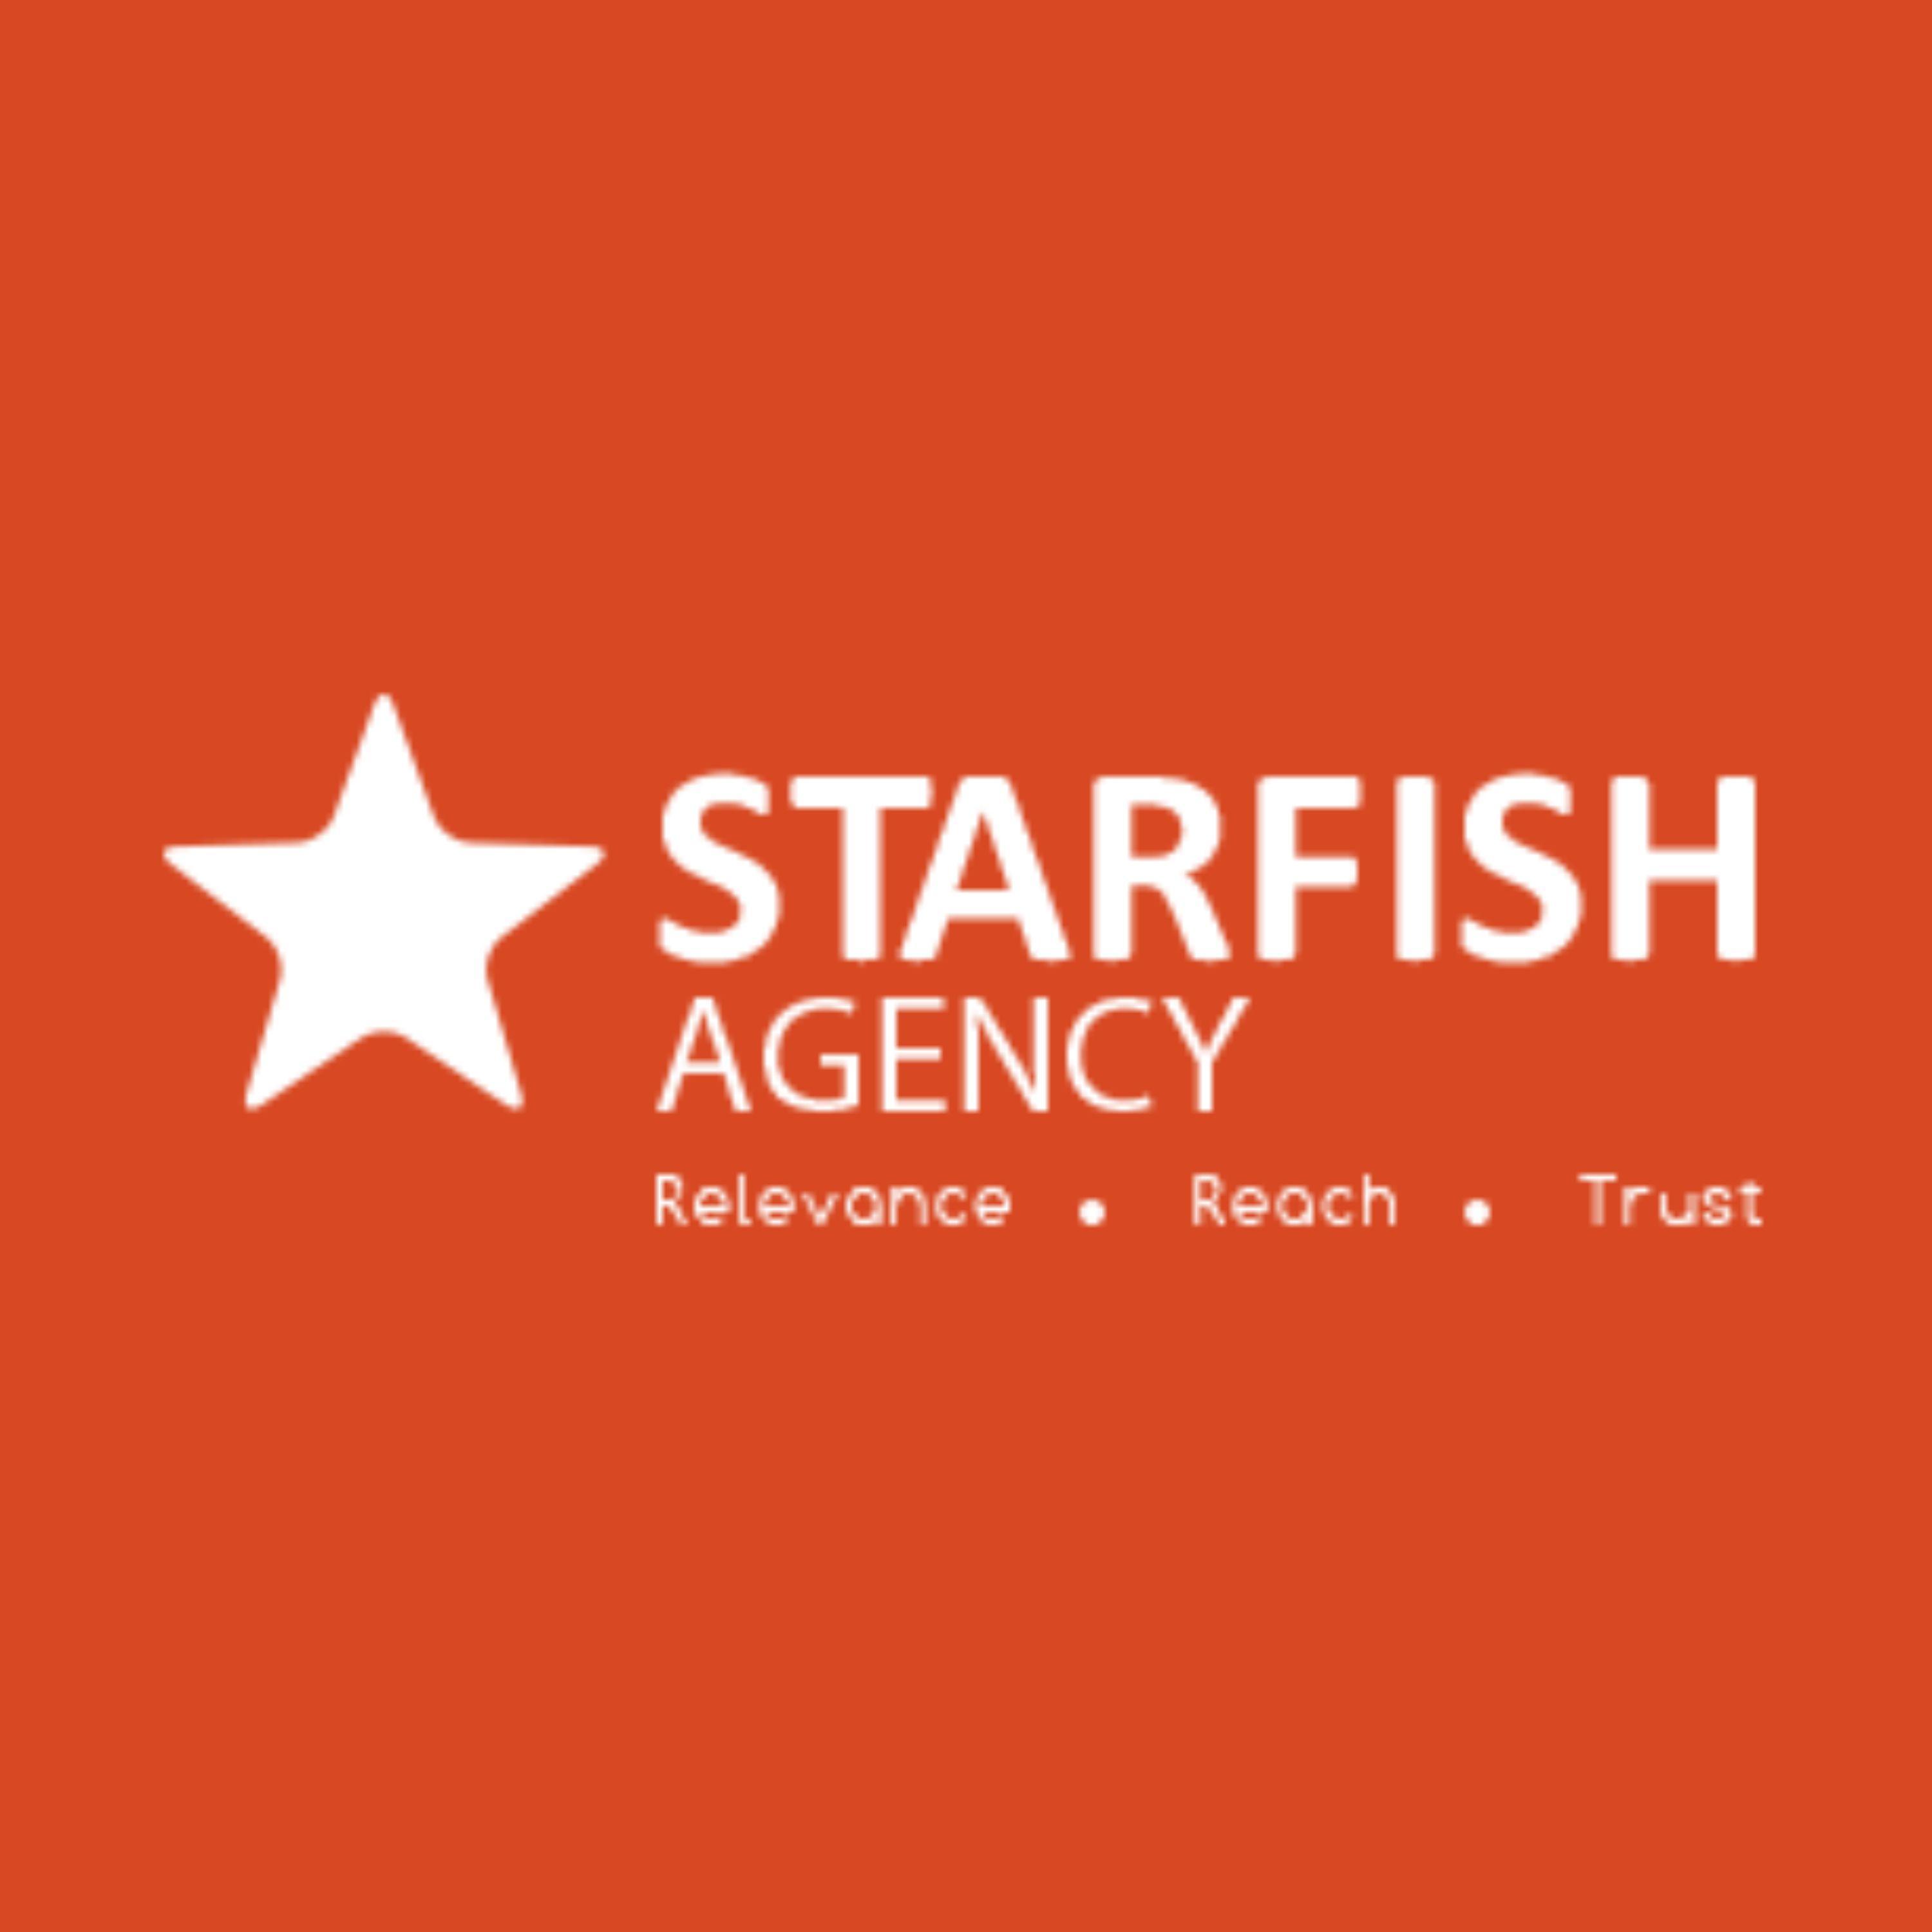 starfishagency